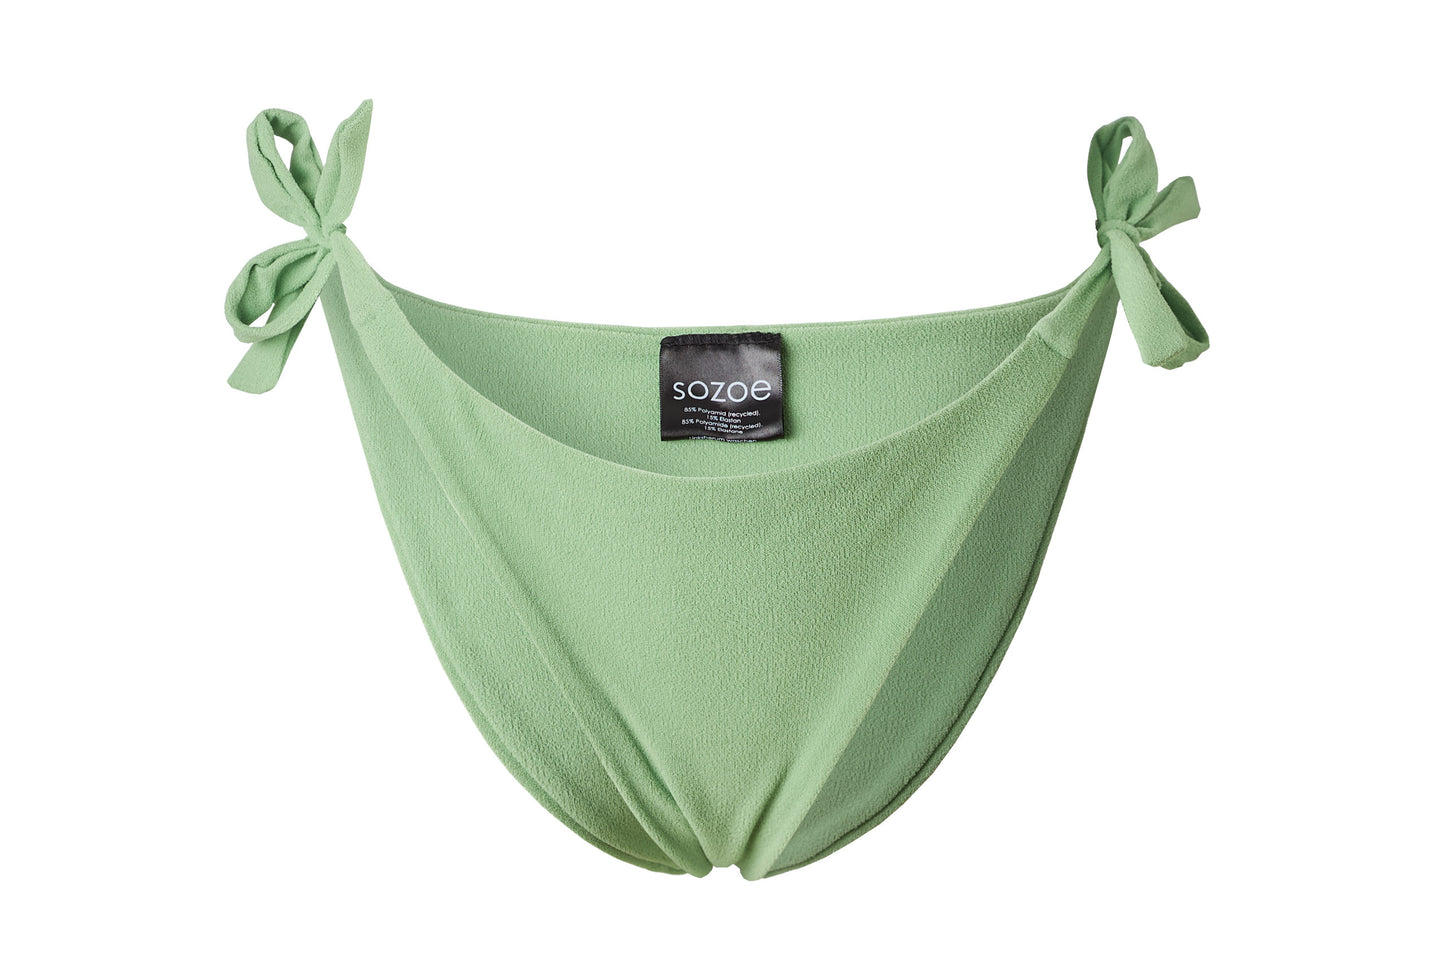 Bikini-Höschen in frischem Mintgrün mit Schleifchen zum Binden an den Seiten